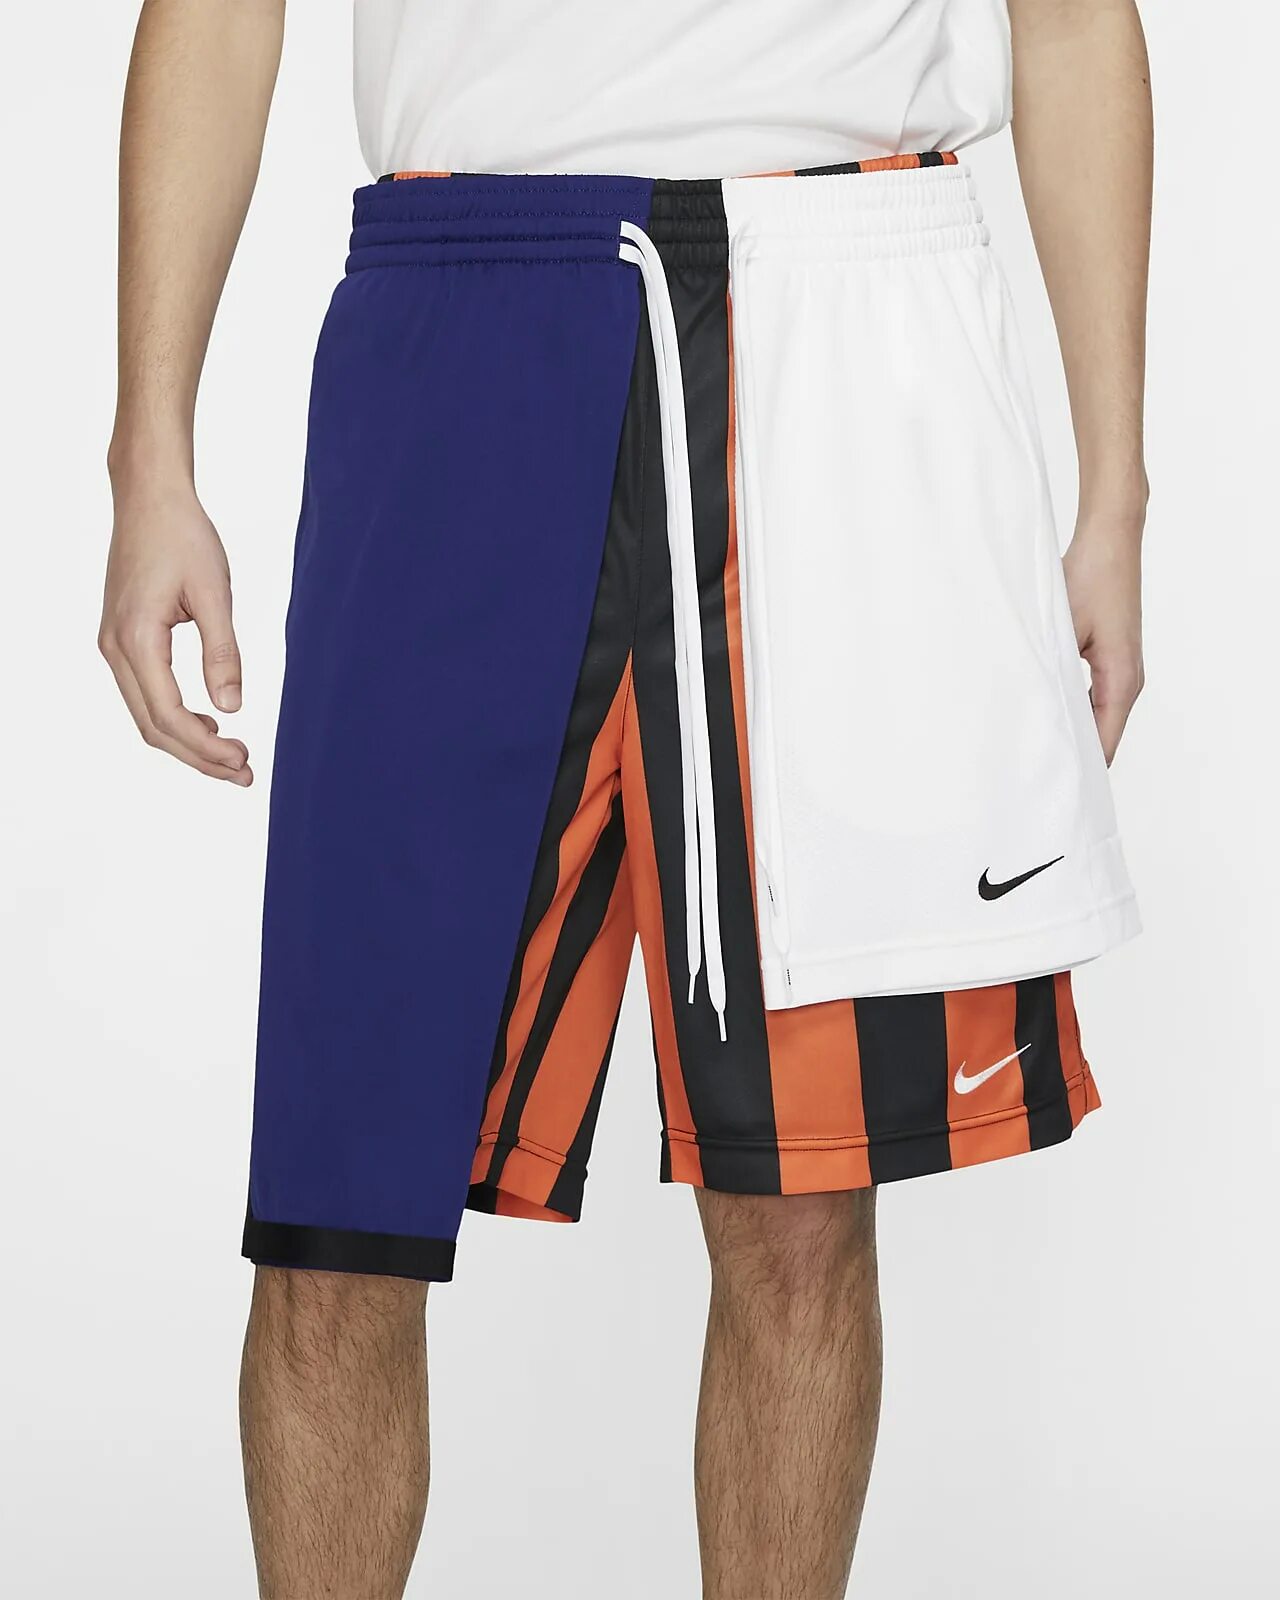 Short collection. Баскетбольные шорты мужские. Nike Lab collection NRG Pants. NIKELAB shorts. Nike NRG collection.